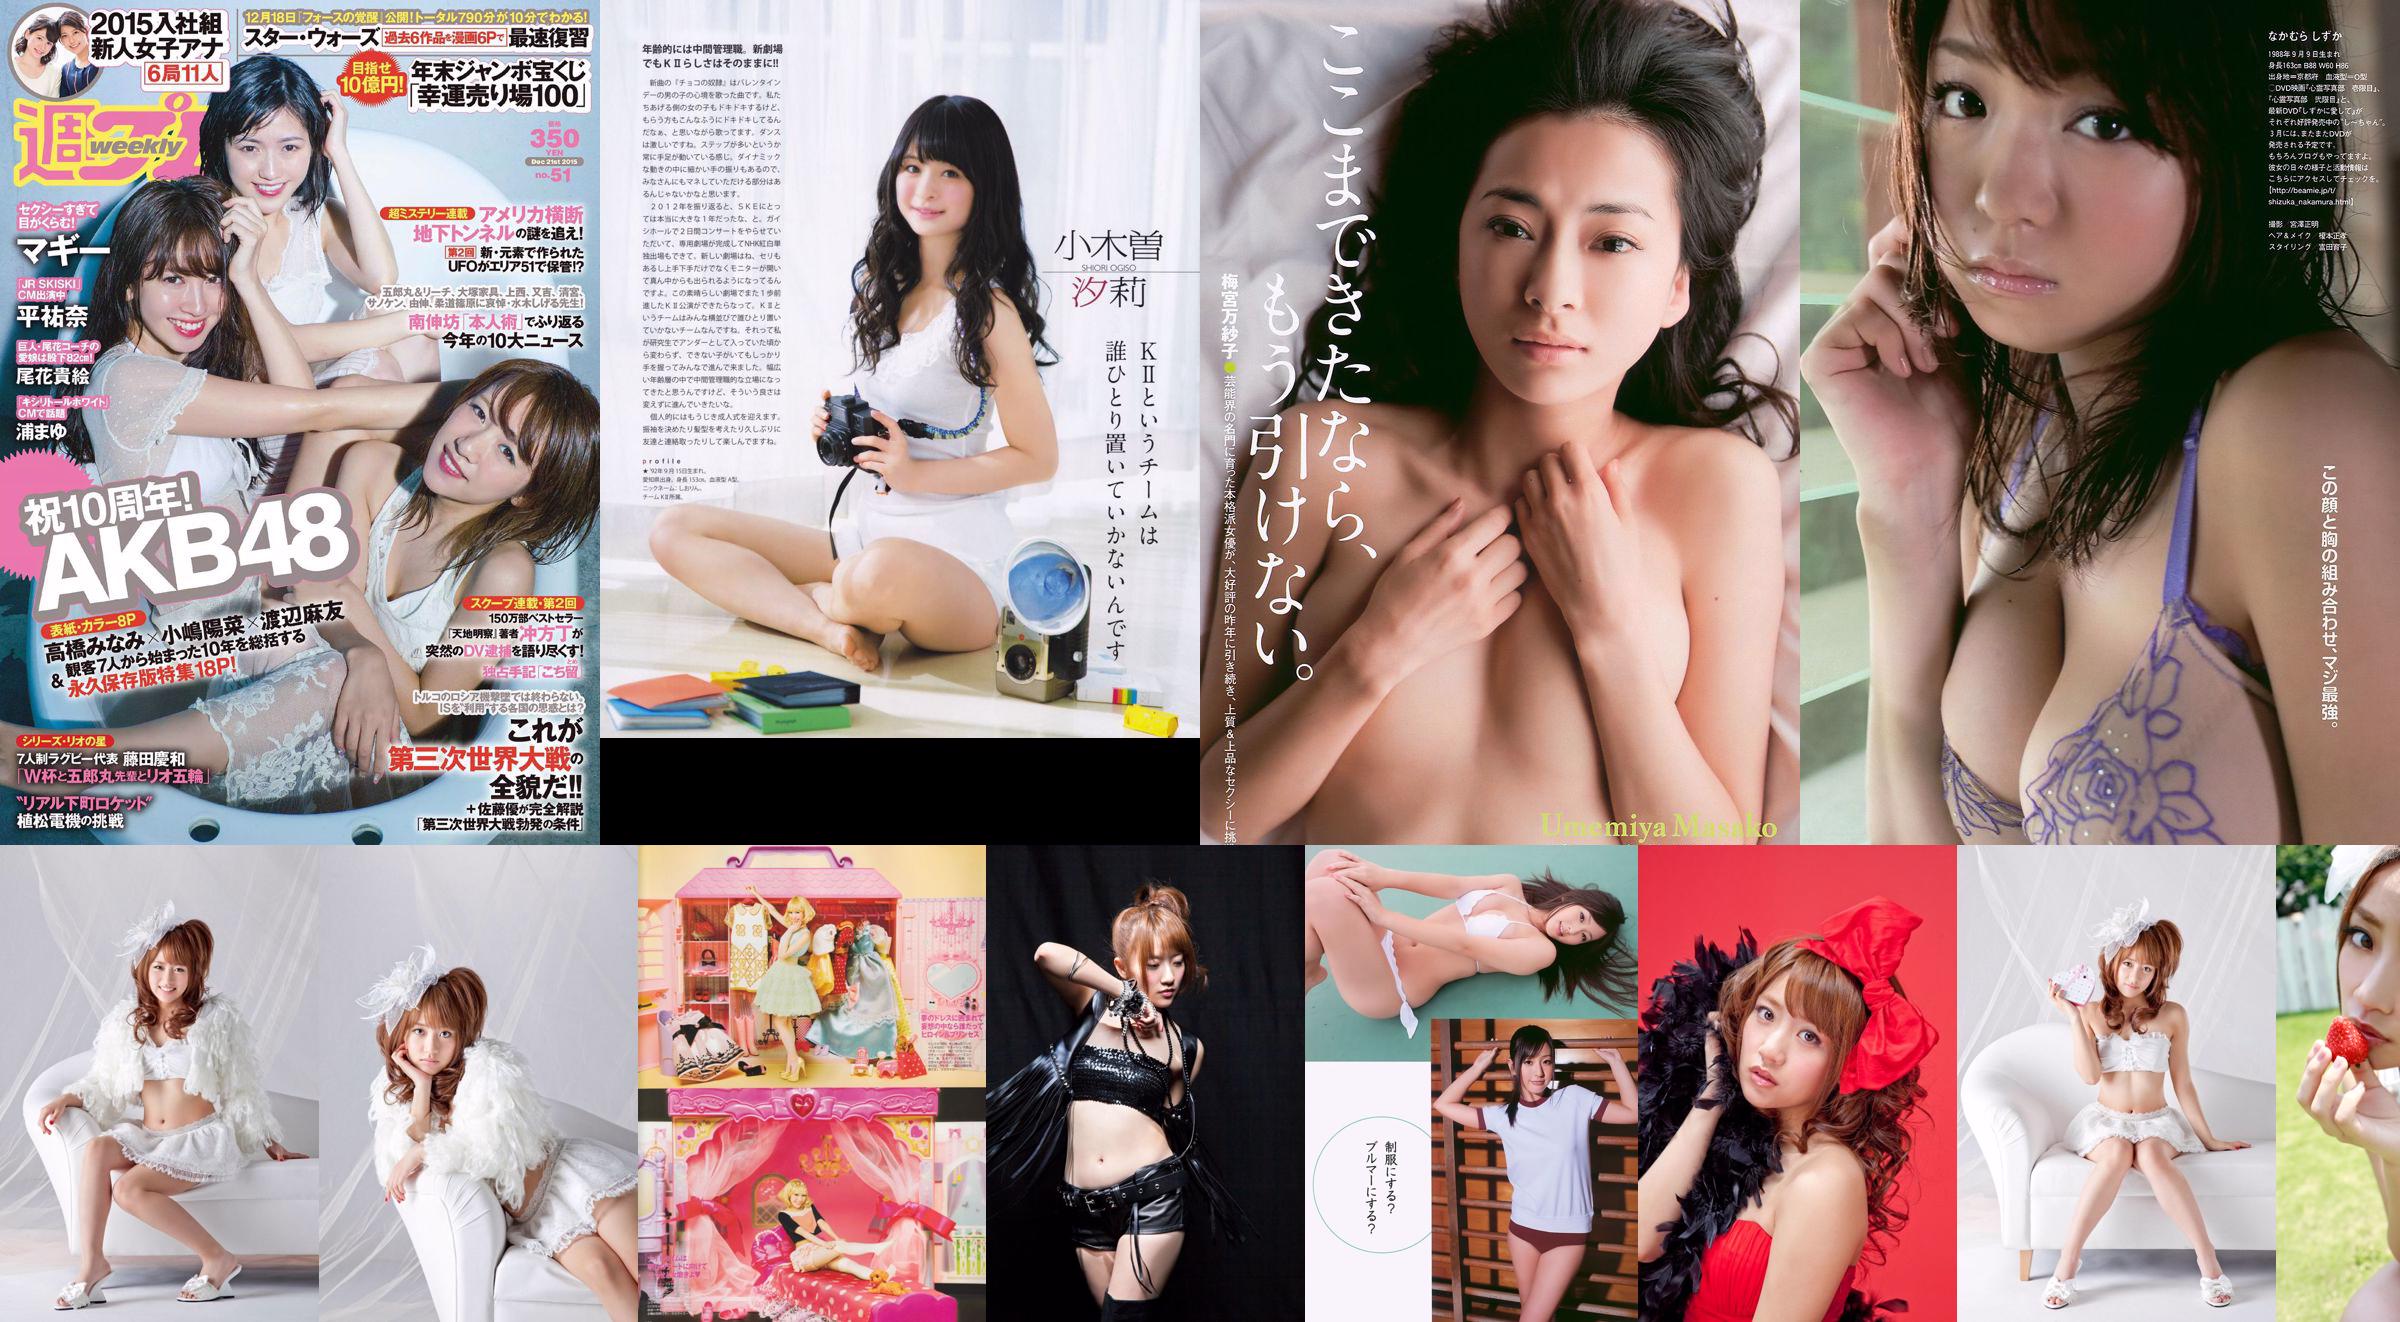 Minami Takahashi Haruna Kojima Mayu Watanabe Maggie Takae Obana Yuna Taira Mayu Ura Mitadera En [Weekly Playboy] 2015 No.51 Photo No.fadd82 Page 1